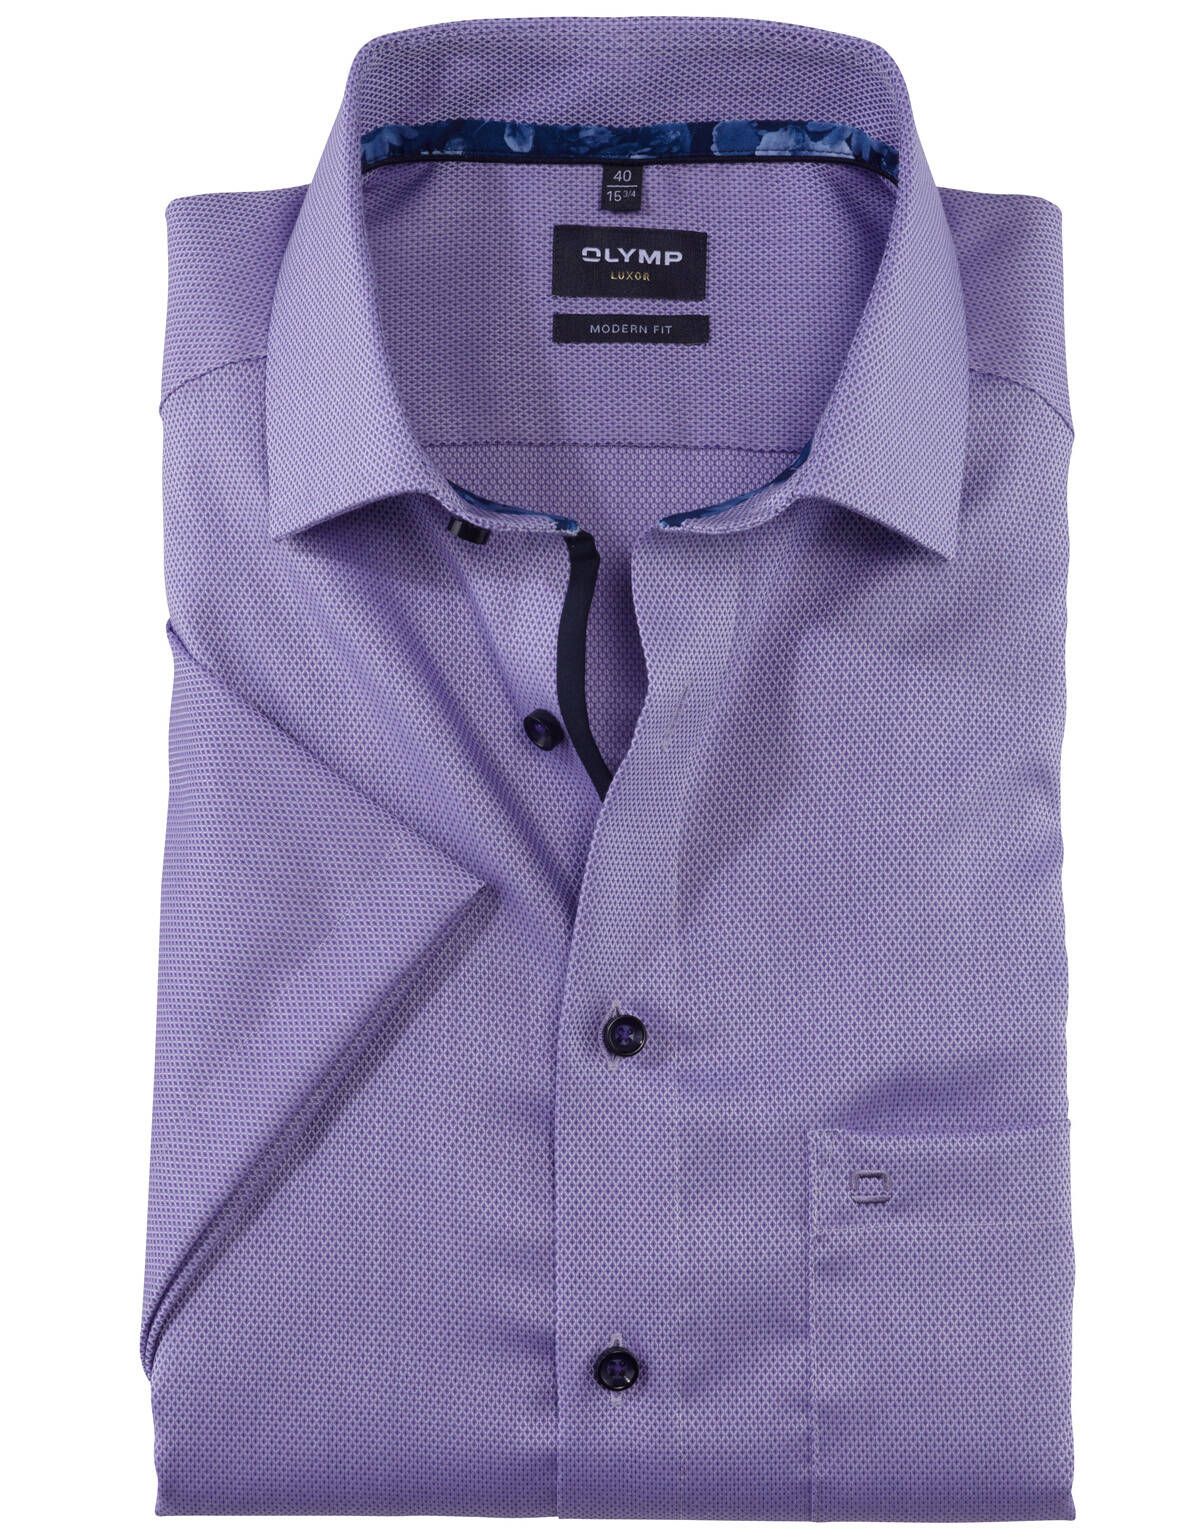 Рубашка мужская OLYMP Luxor, modern fit, фактурная[Сиреневый]